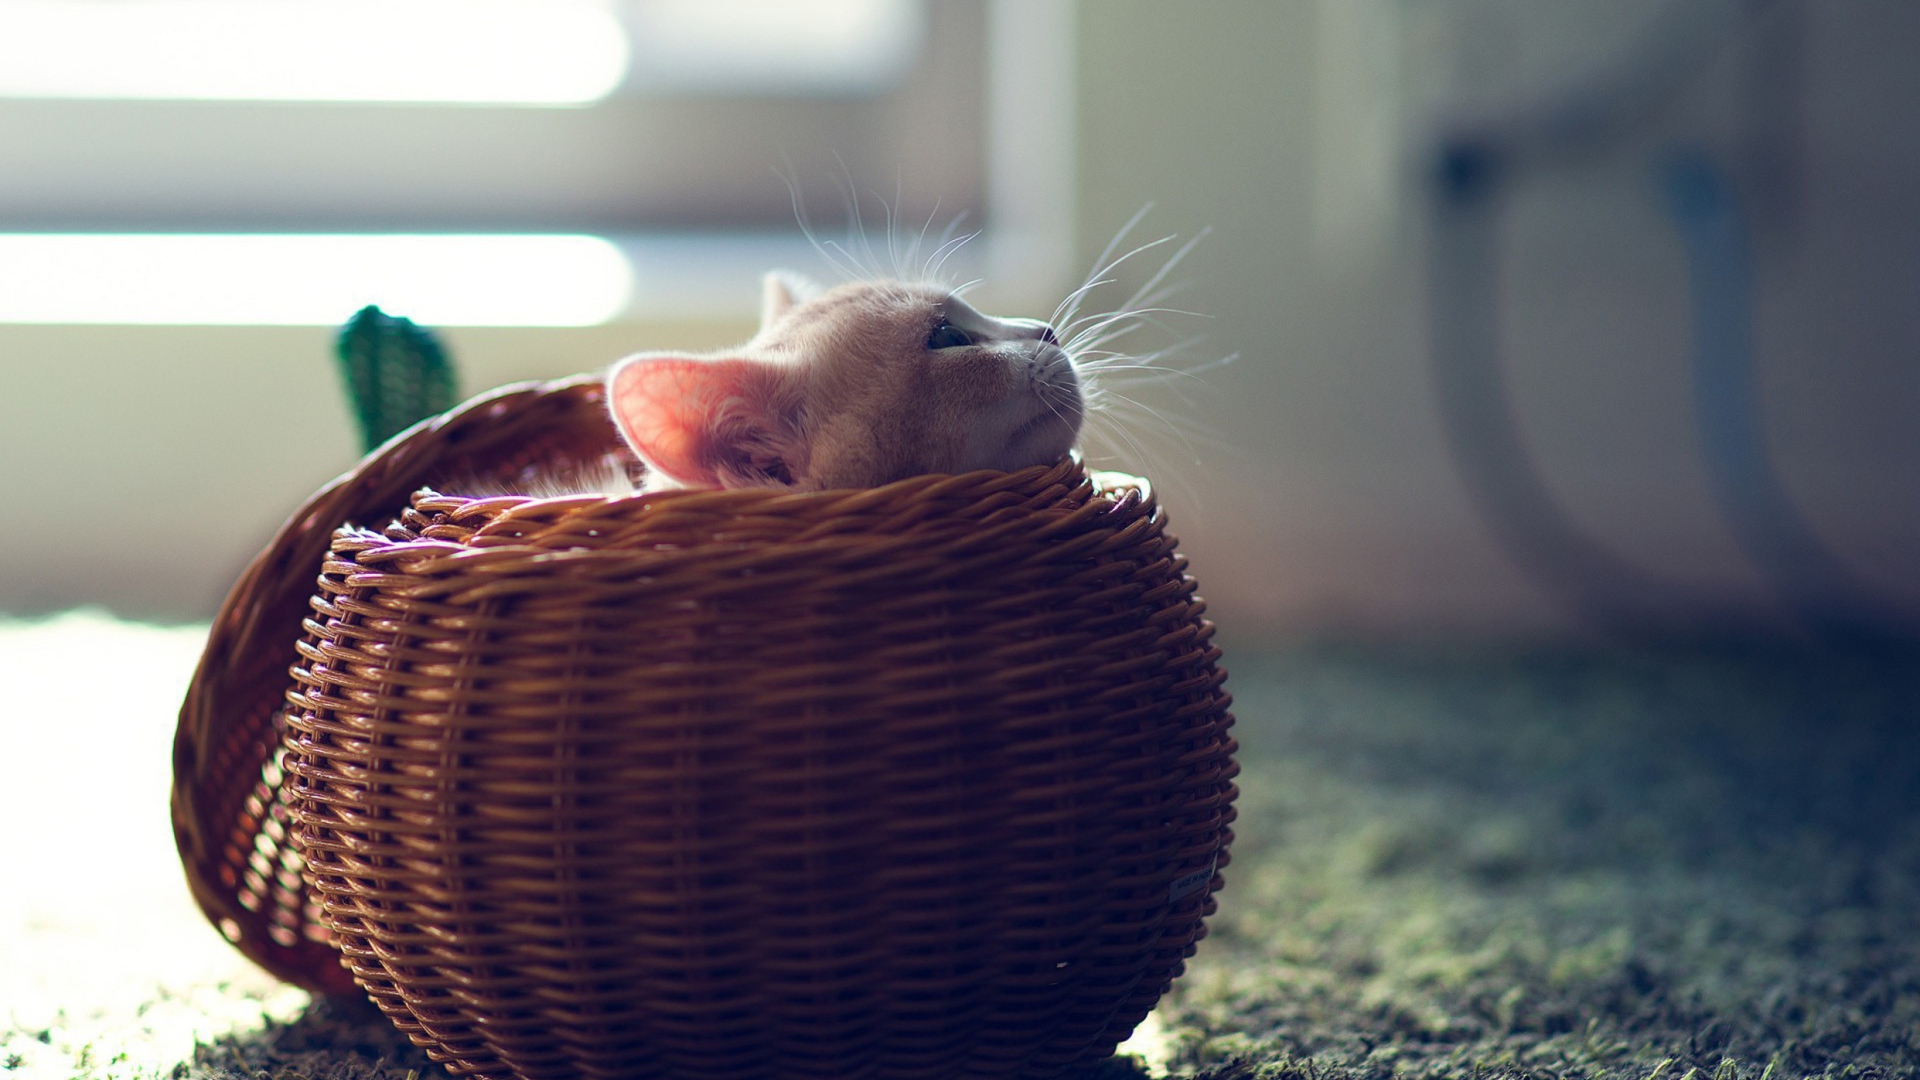 Das Cute Kitten In Basket Wallpaper 1920x1080